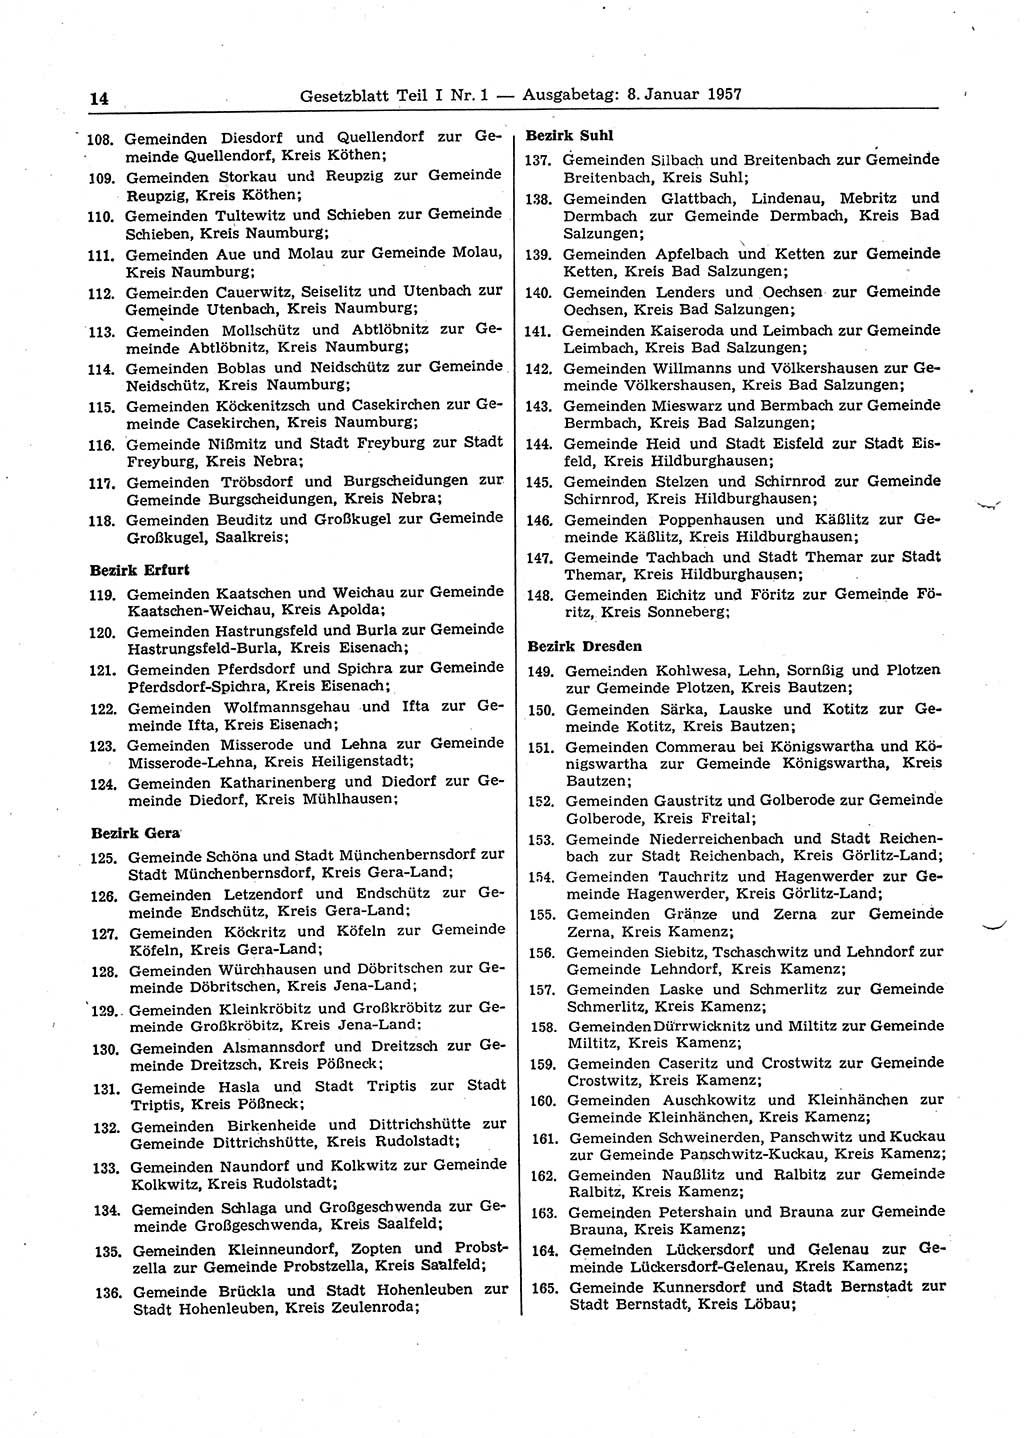 Gesetzblatt (GBl.) der Deutschen Demokratischen Republik (DDR) Teil Ⅰ 1957, Seite 14 (GBl. DDR Ⅰ 1957, S. 14)